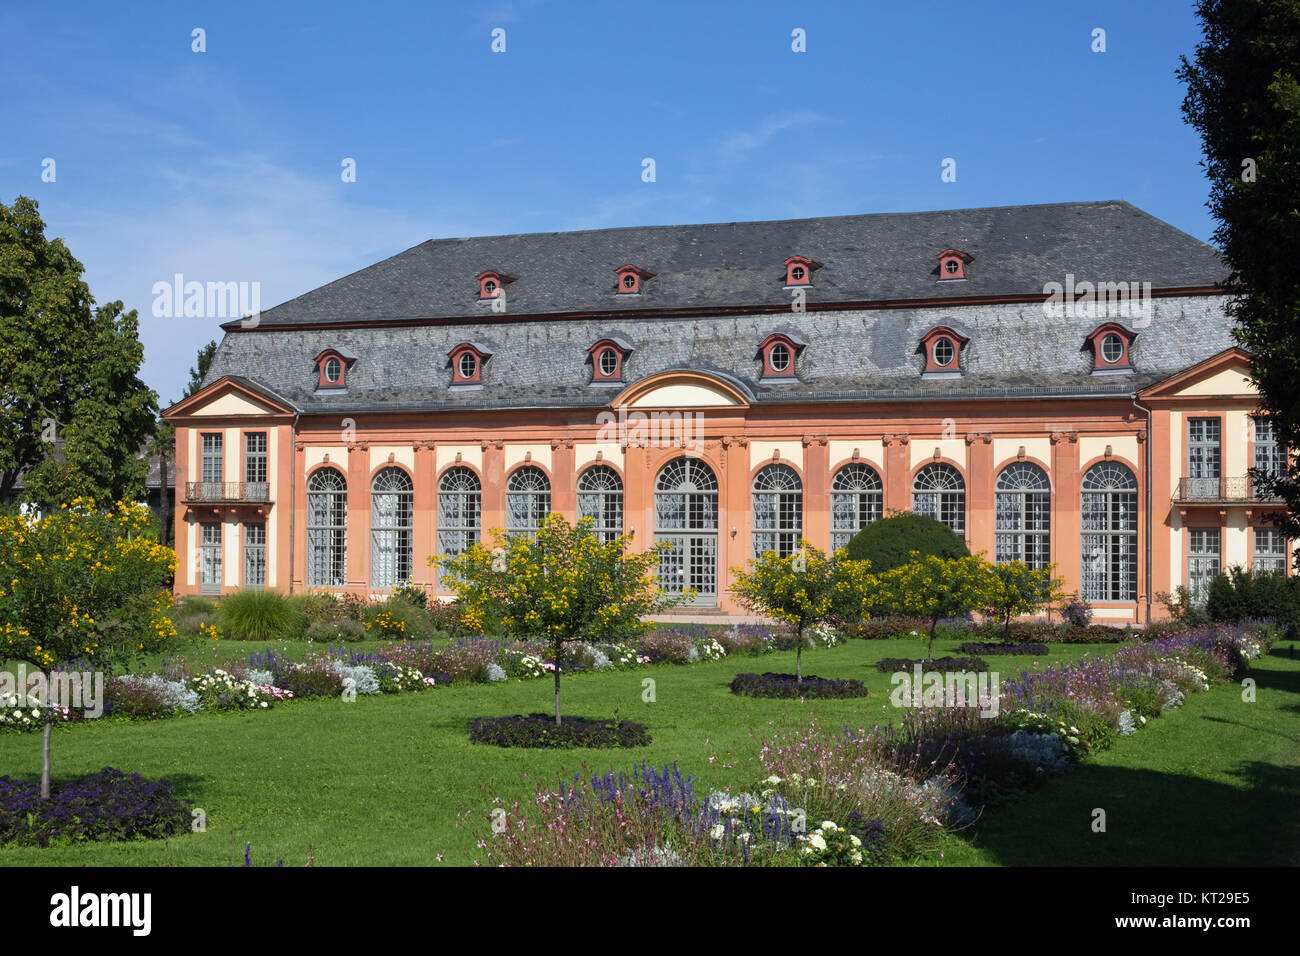 Orangeriegarten de Darmstadt (Hesse, Alemania) Foto de stock